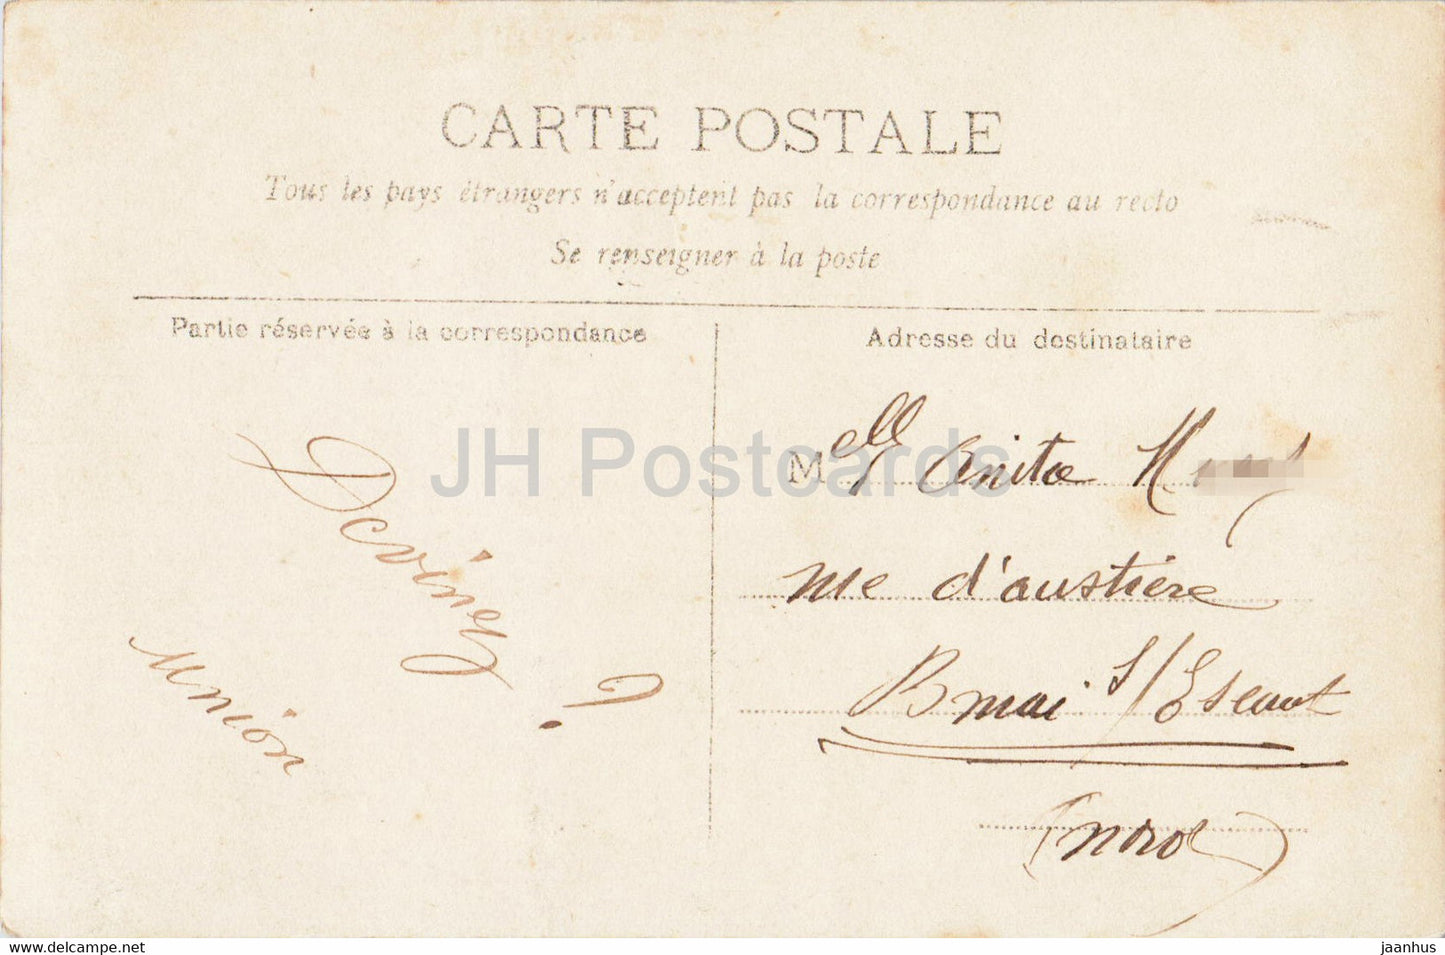 O fragiles bateaux - Mädchen - Schiffsmodell - 1345 - alte Postkarte - 1906 - Frankreich - gebraucht